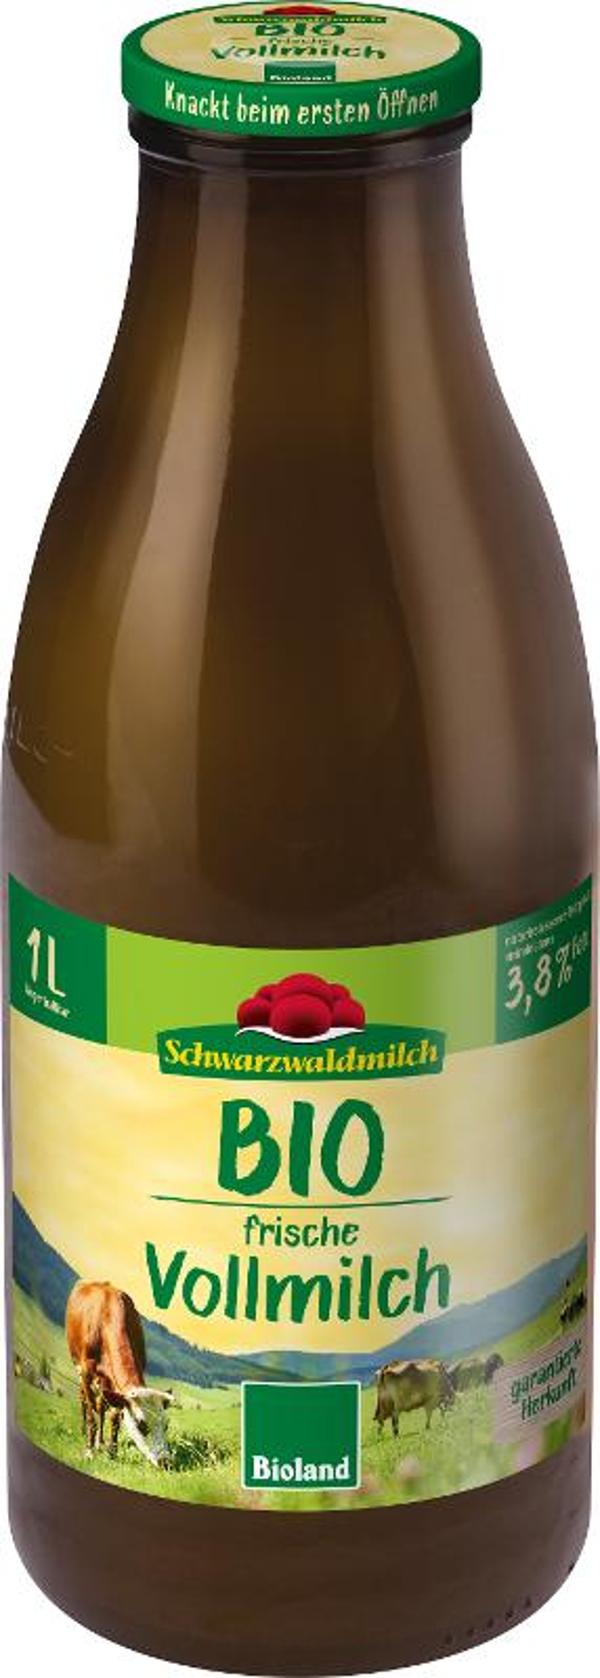 Produktfoto zu SWM Frischmilch 3,8% - Flasche